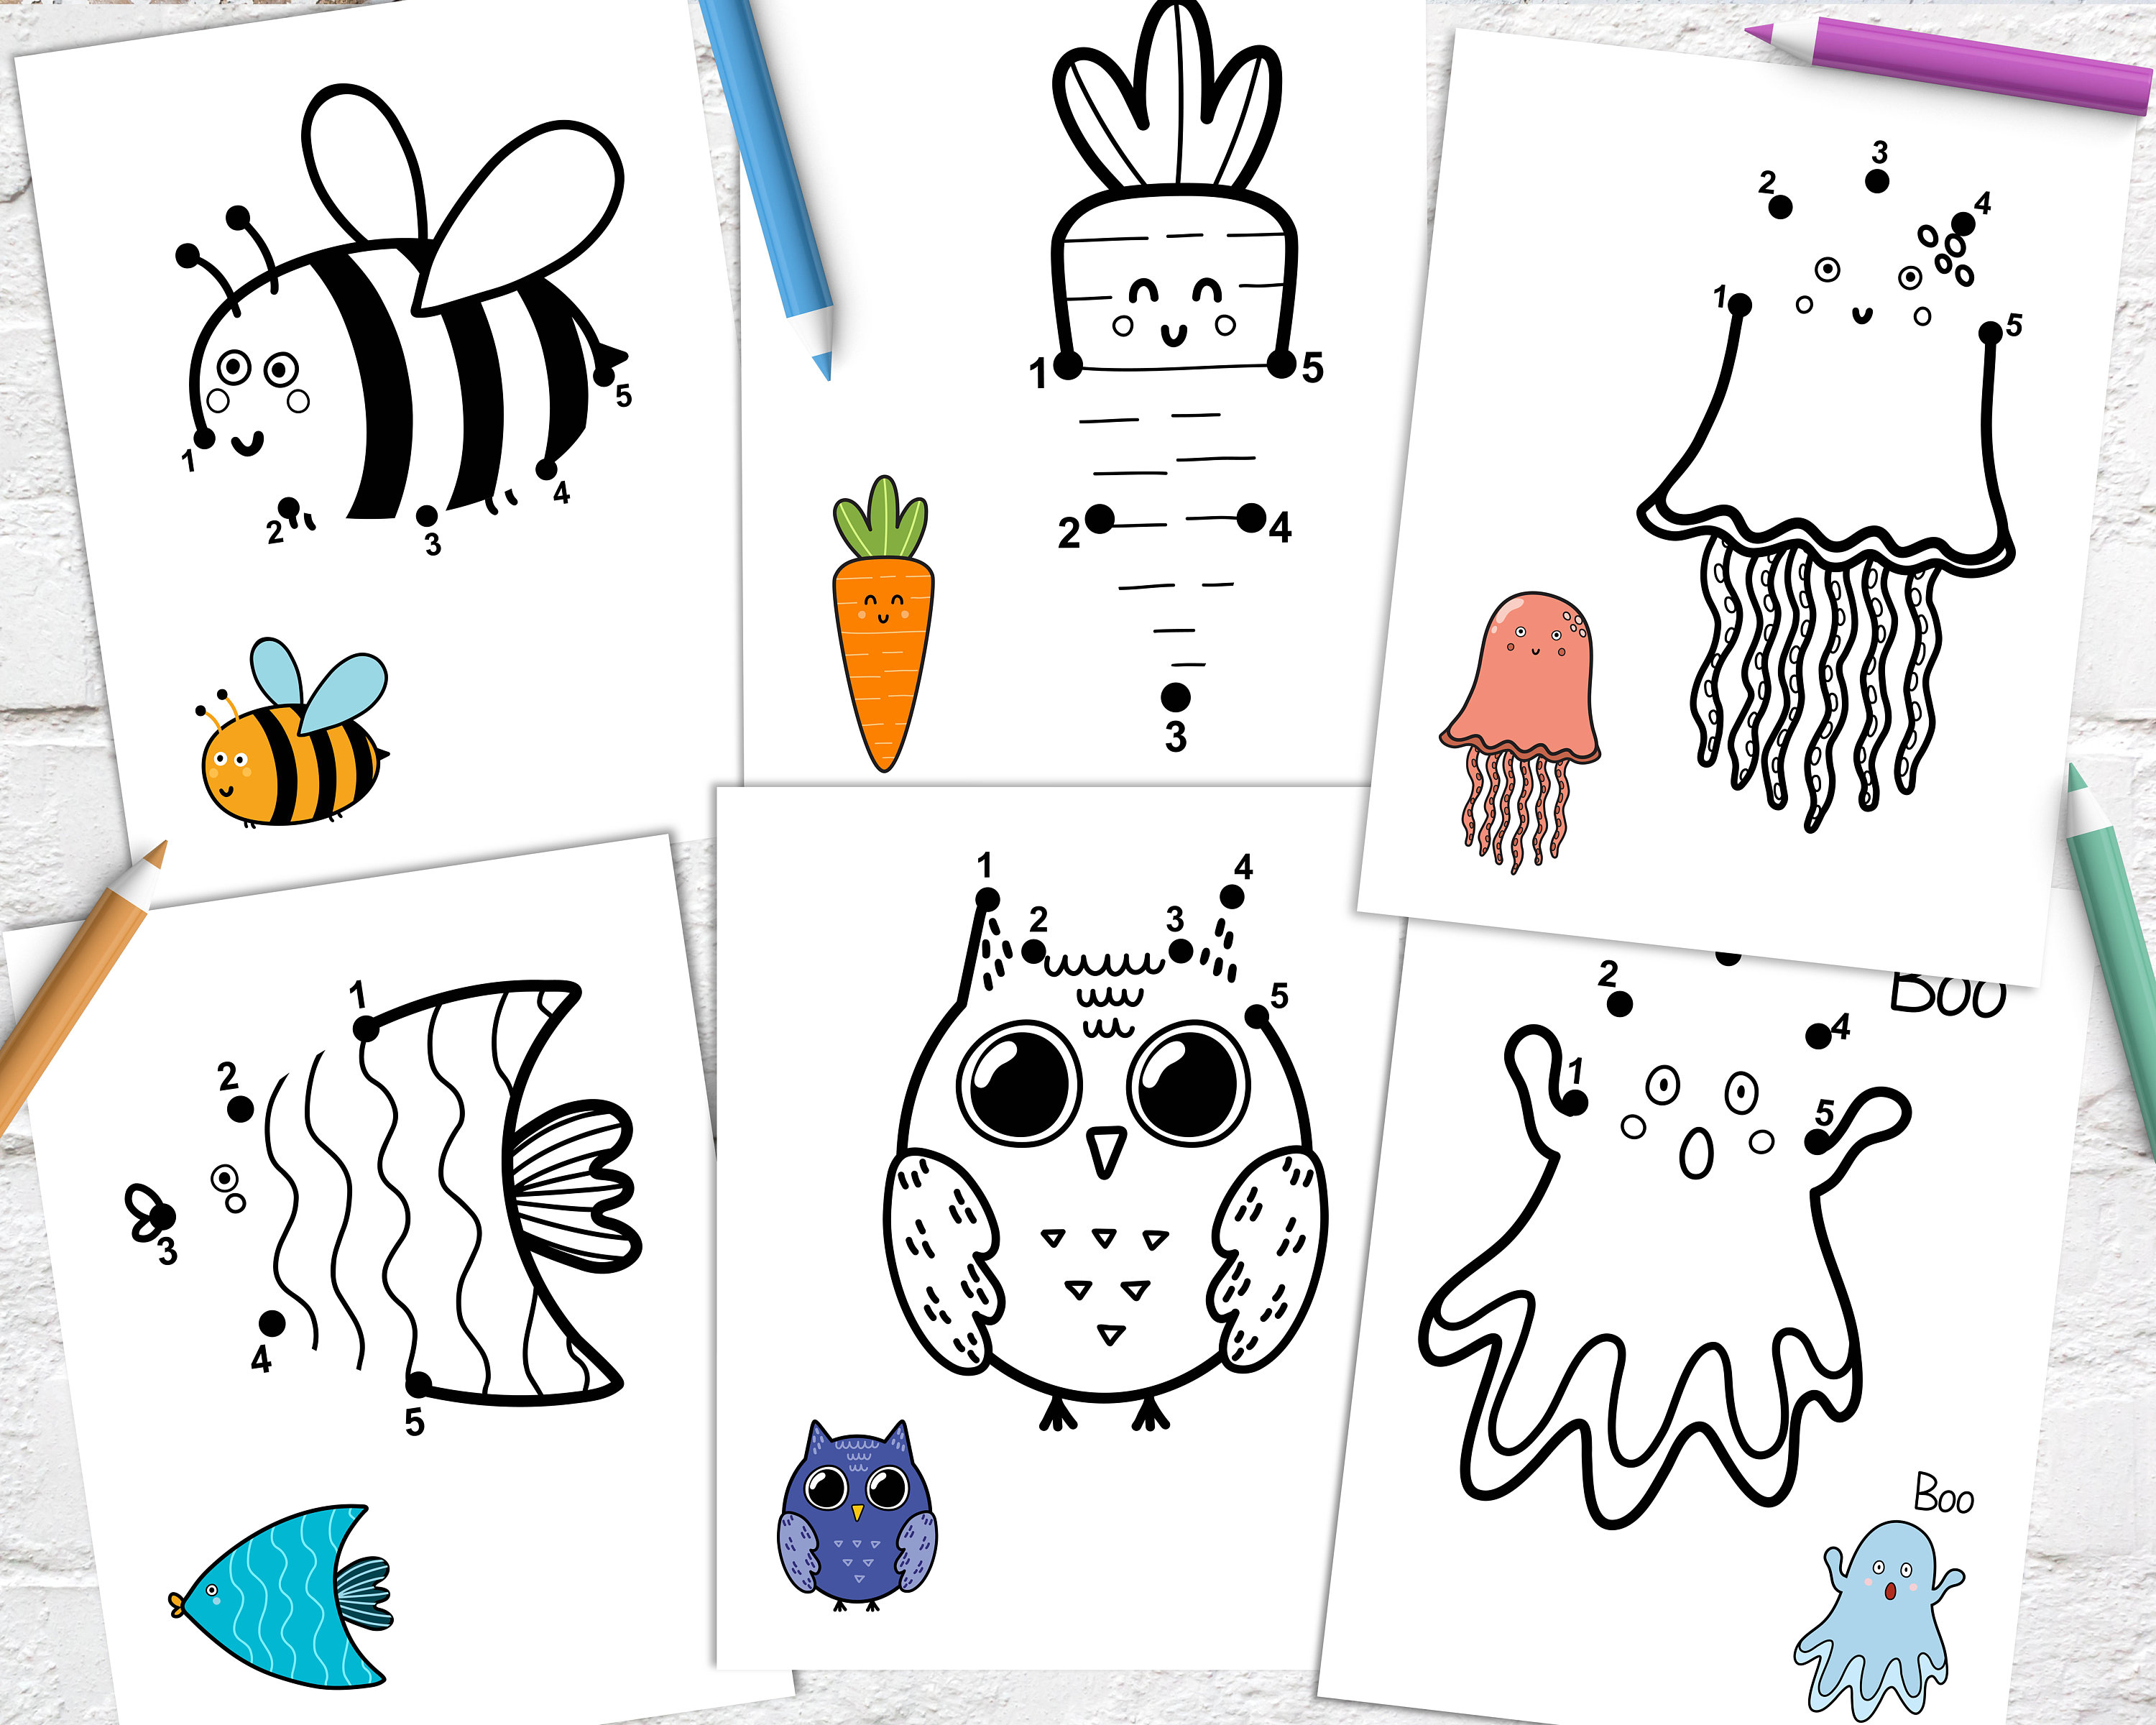 Imprimibles: páginas para colorear y actividades de aprendizaje